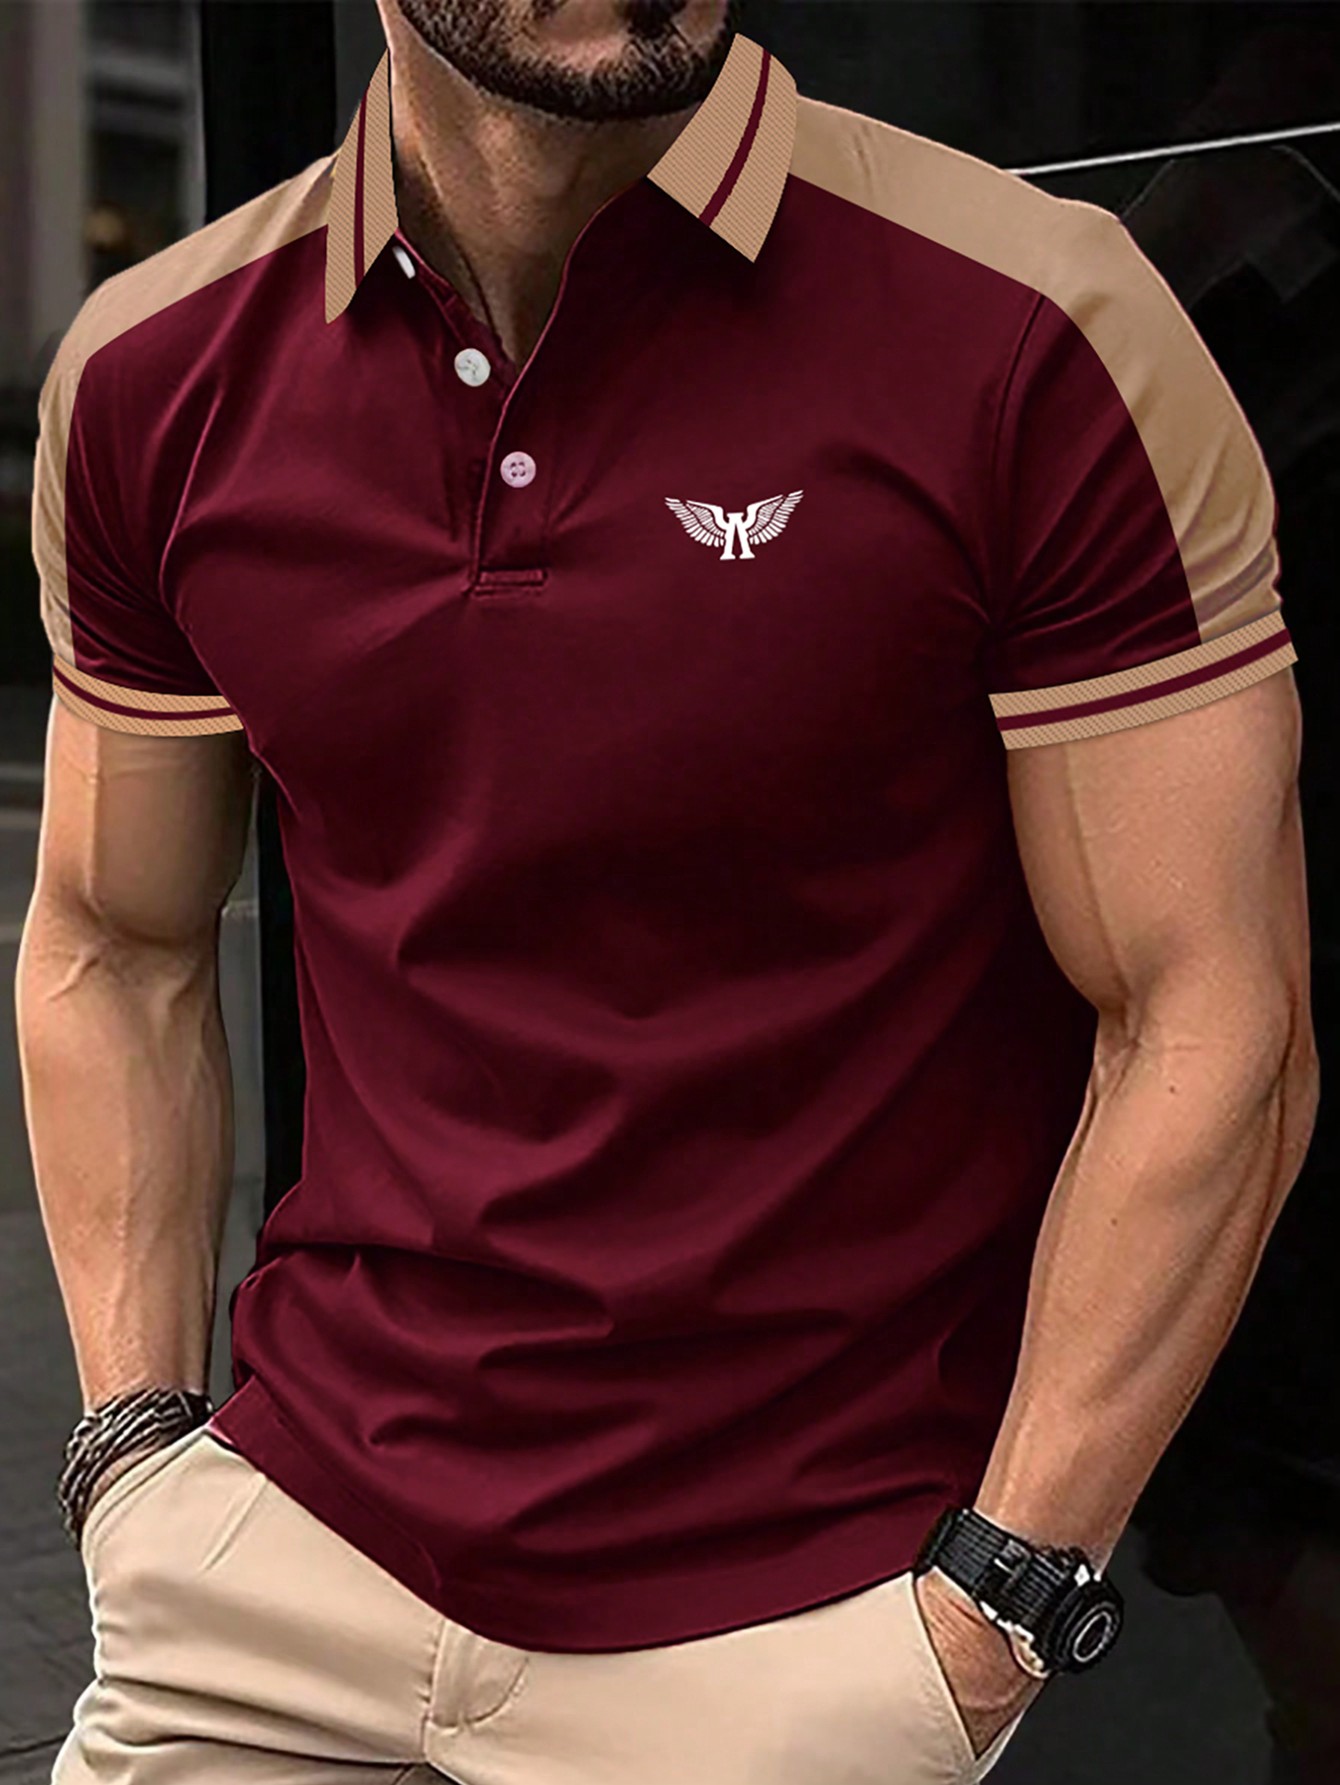 Мужская рубашка-поло с короткими рукавами и пуговицами на пуговицах Manfinity Homme контрастного цвета, бургундия мужская рубашка поло контрастного цвета manfinity homme черный